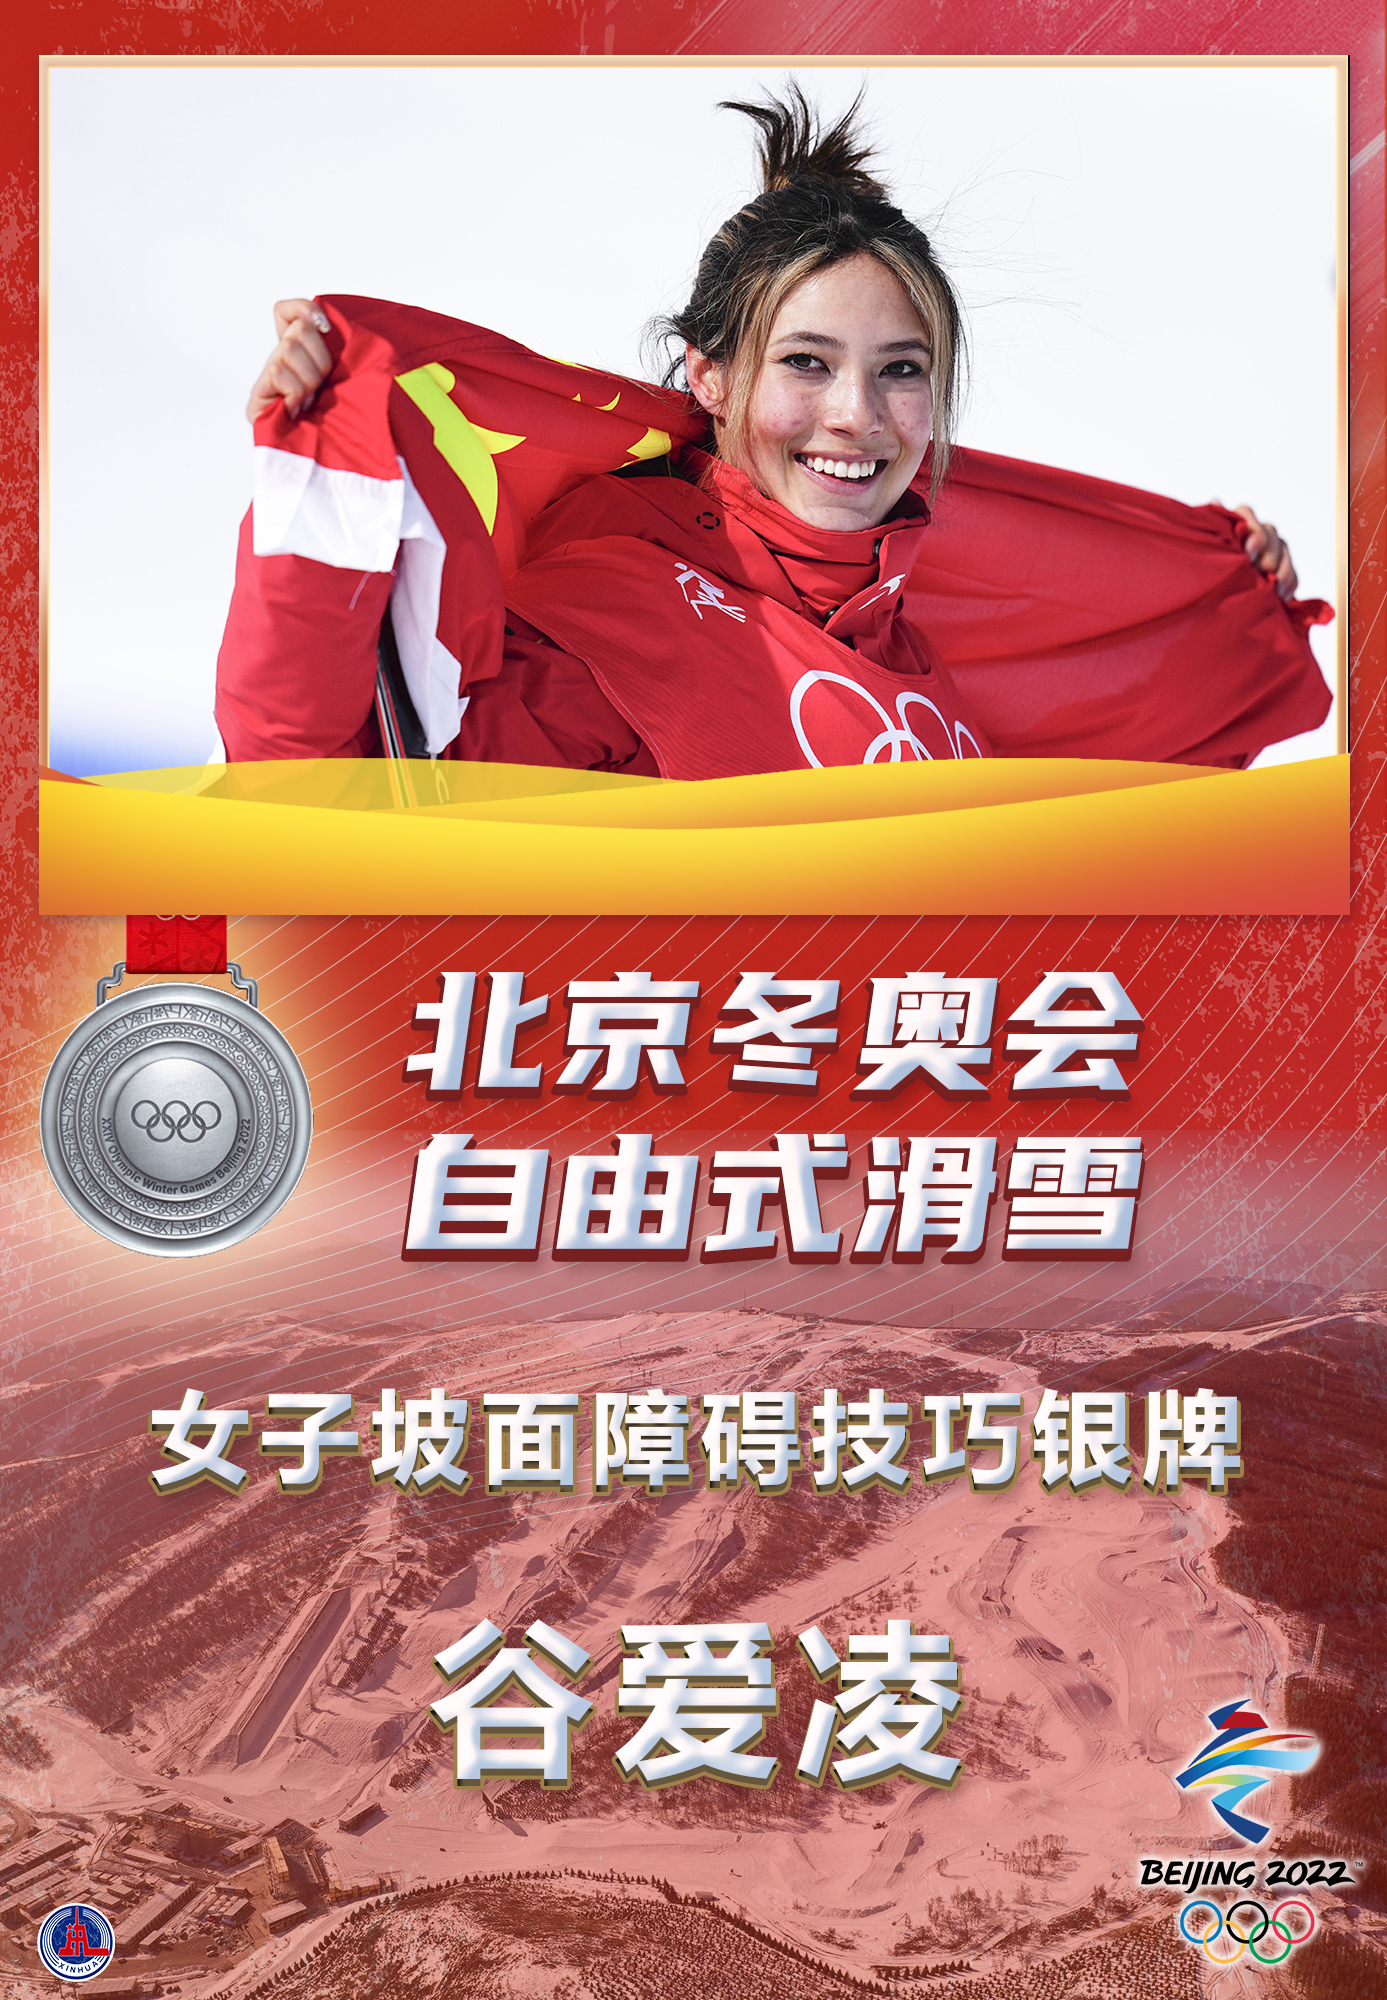 ［北京冬奥会］谷爱凌自由式滑雪女子坡面障碍技巧摘银